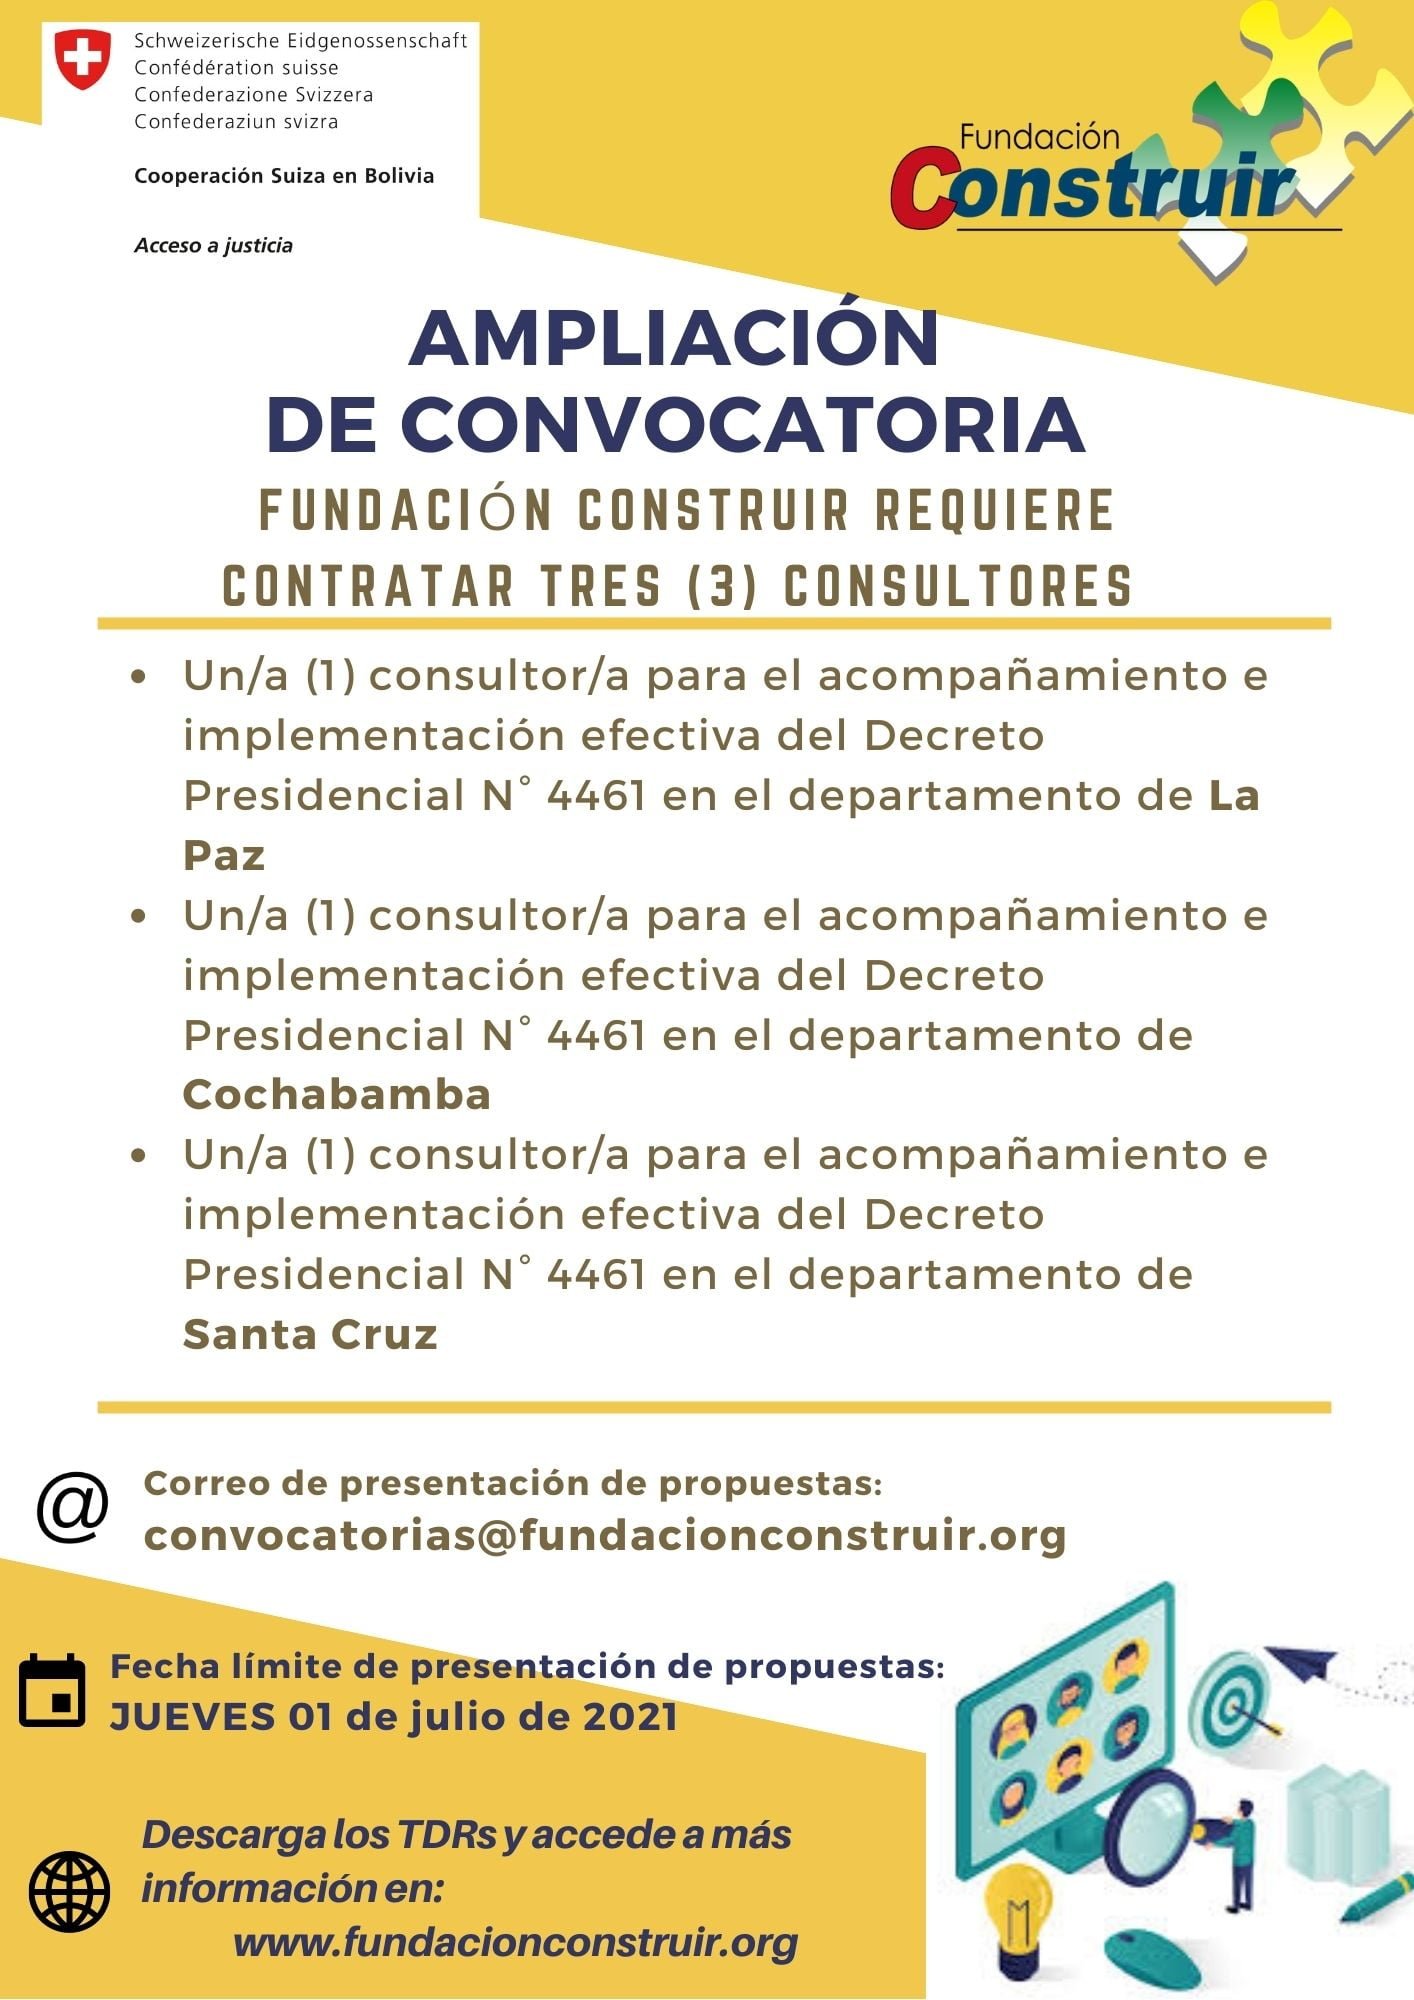 AMPLIACIÓN DE CONVOCATORIA: Consultores acompañamiento e implementación efectiva del Decreto Presidencial N° 4461 en los departamentos de La Paz, Cochabamba y Santa Cruz